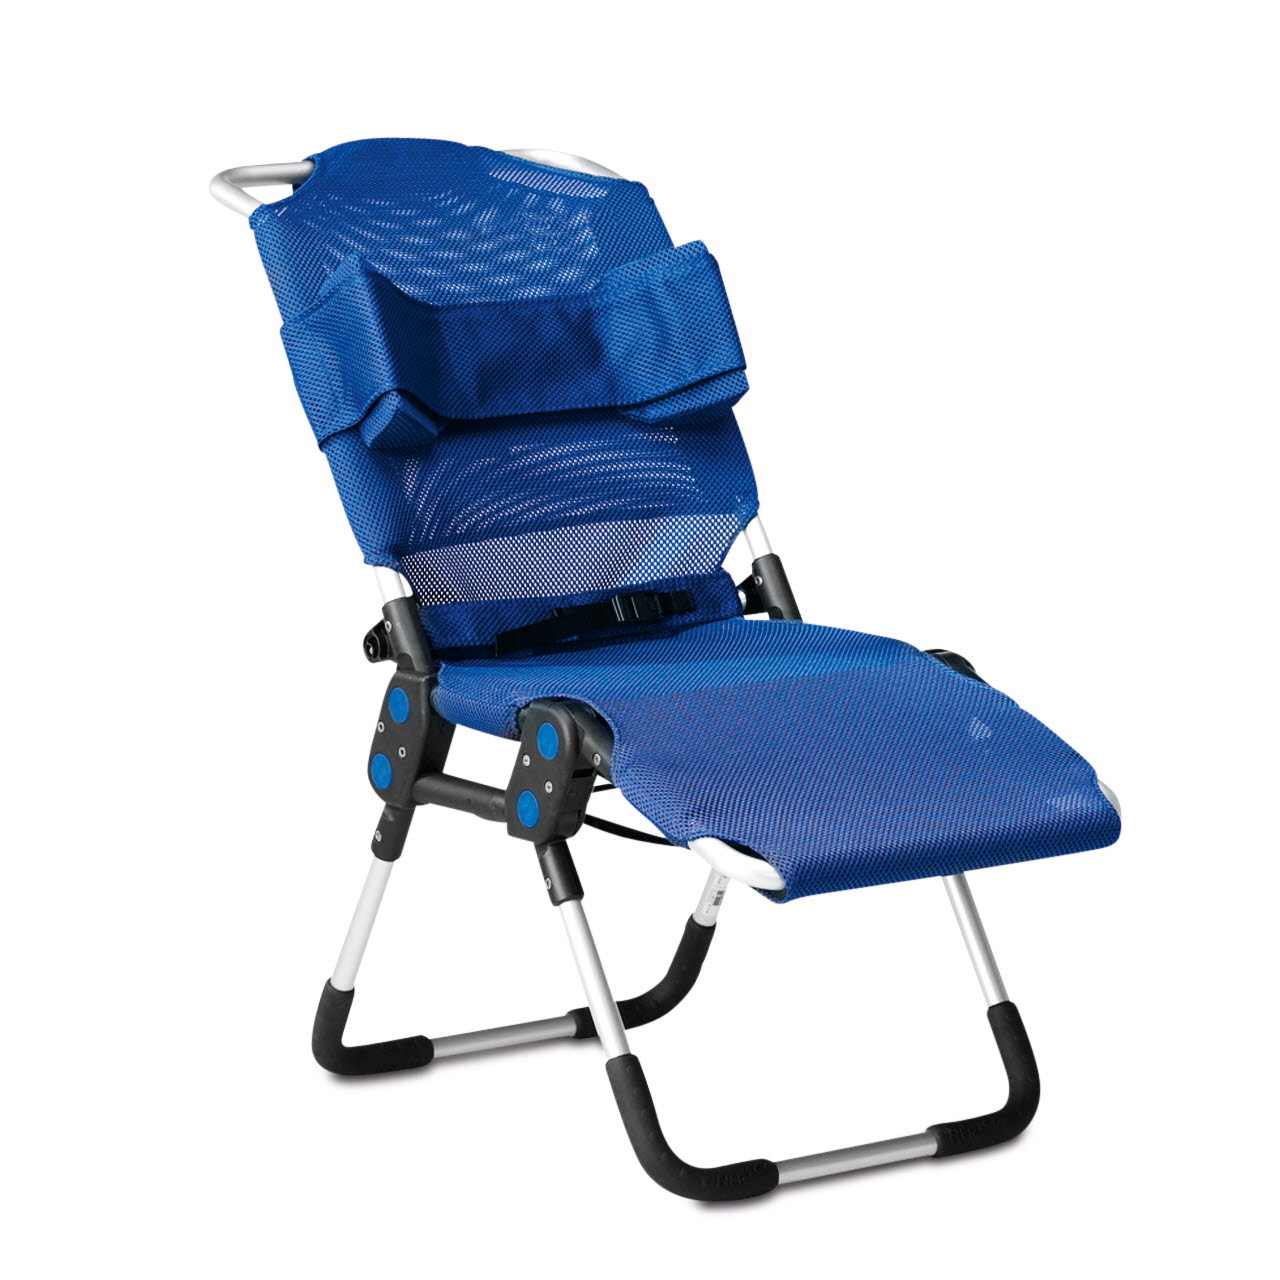 Сиденье для детей дцп. Стул-гамак для ванны r82 Manatee (Манати). Кресло для детей инвалидов с ДЦП R-82. Санитарное кресло r82. Шезлонг r82.